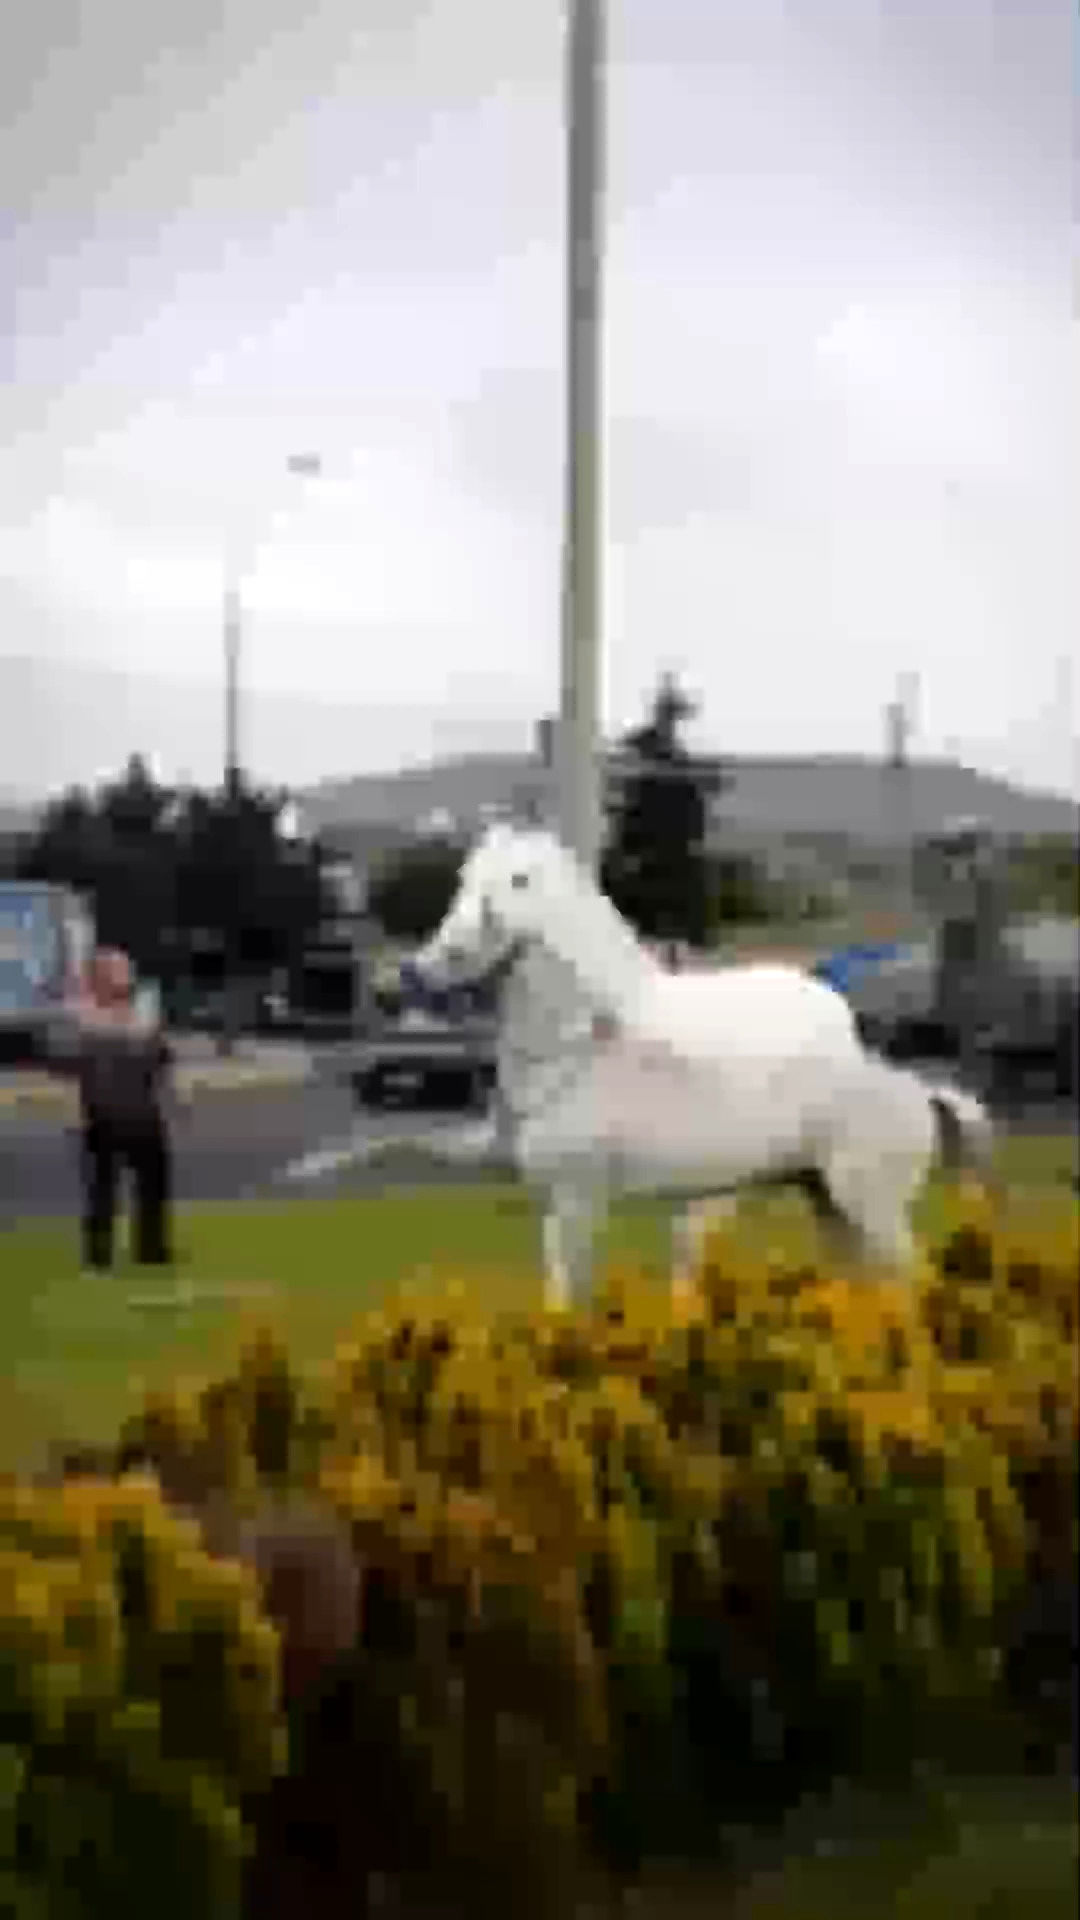 واکنش جالب یک اسب پس از مواجه شدن با مجسمه خود